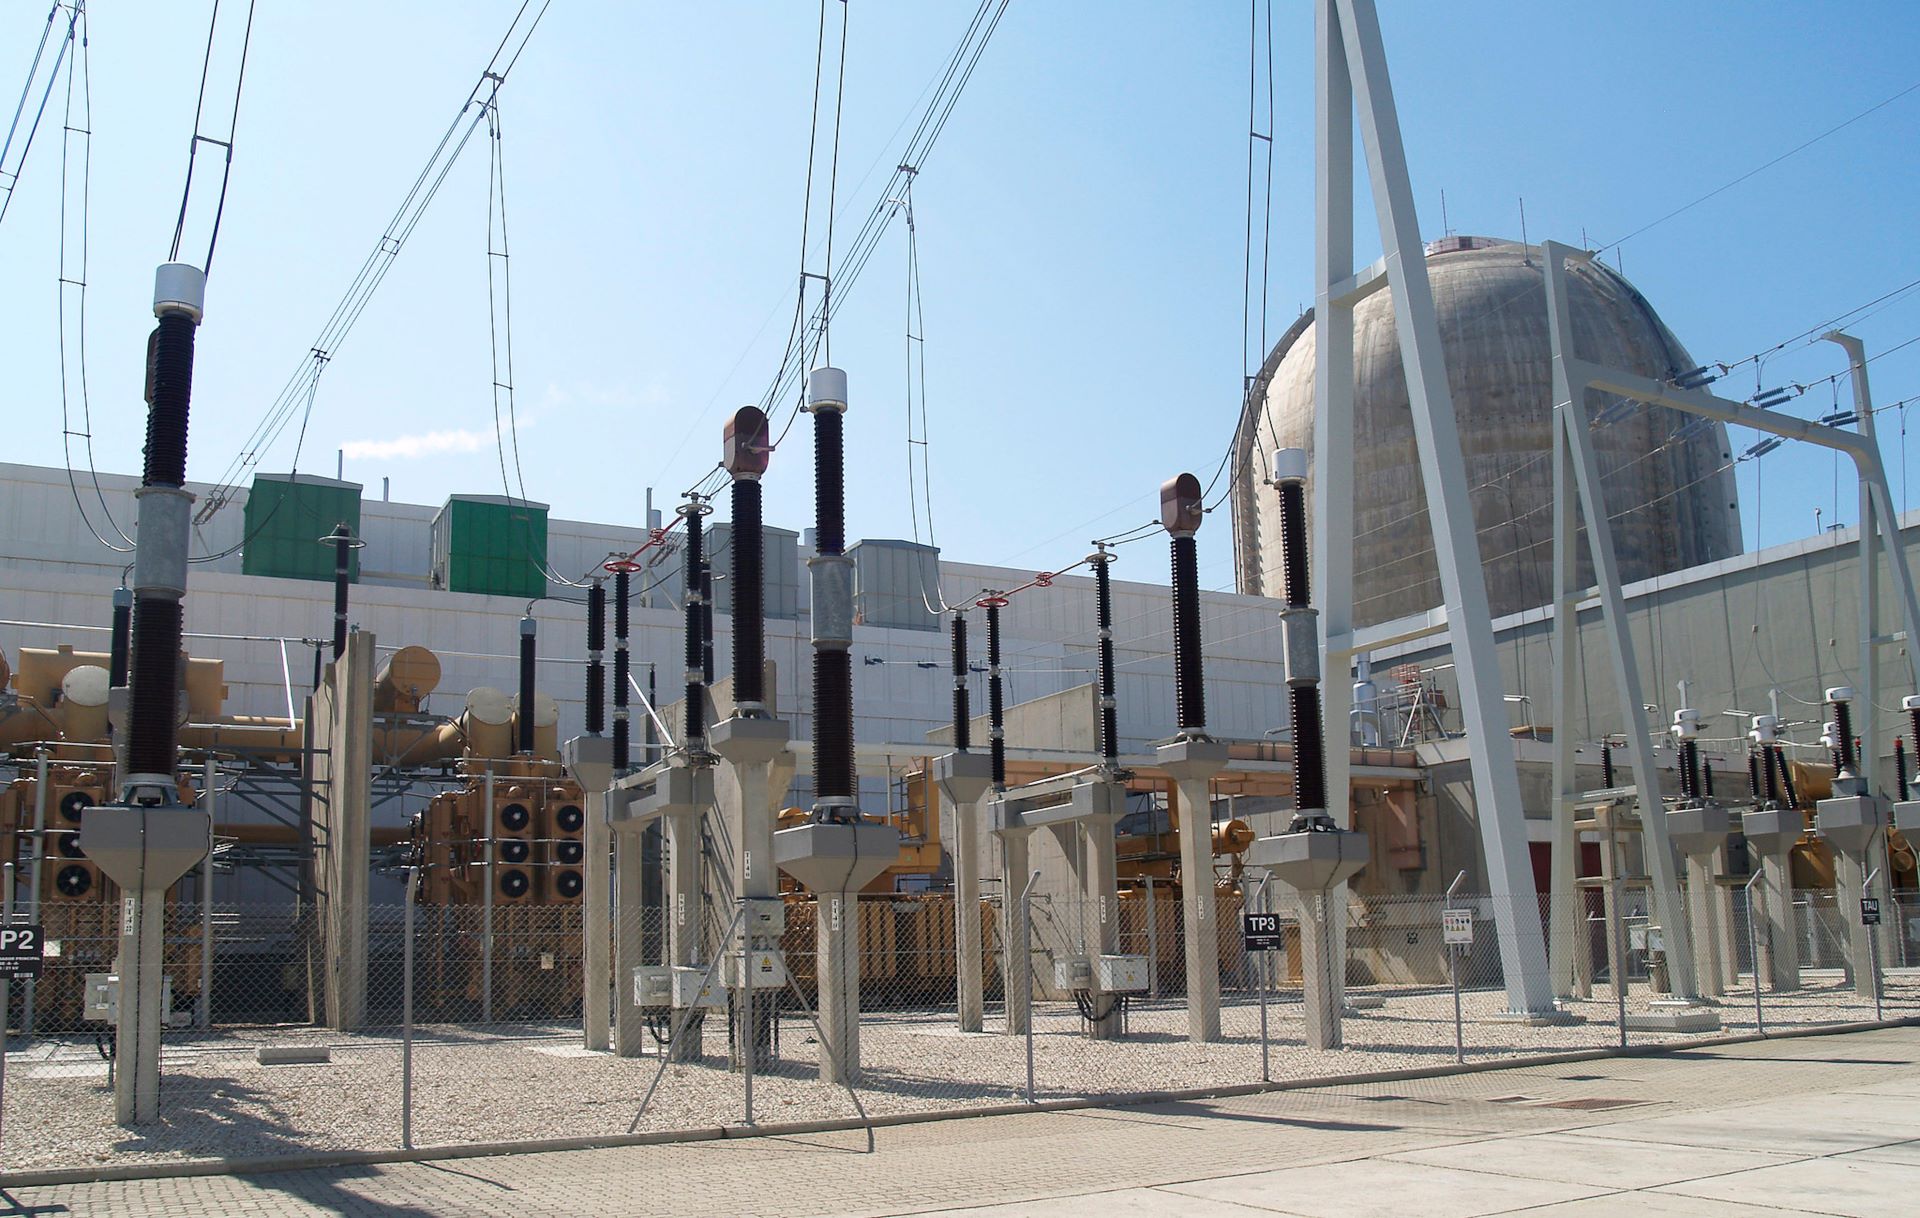 La central nuclear de Vandellòs II sufre un paro por la pérdida de alimentación eléctrica